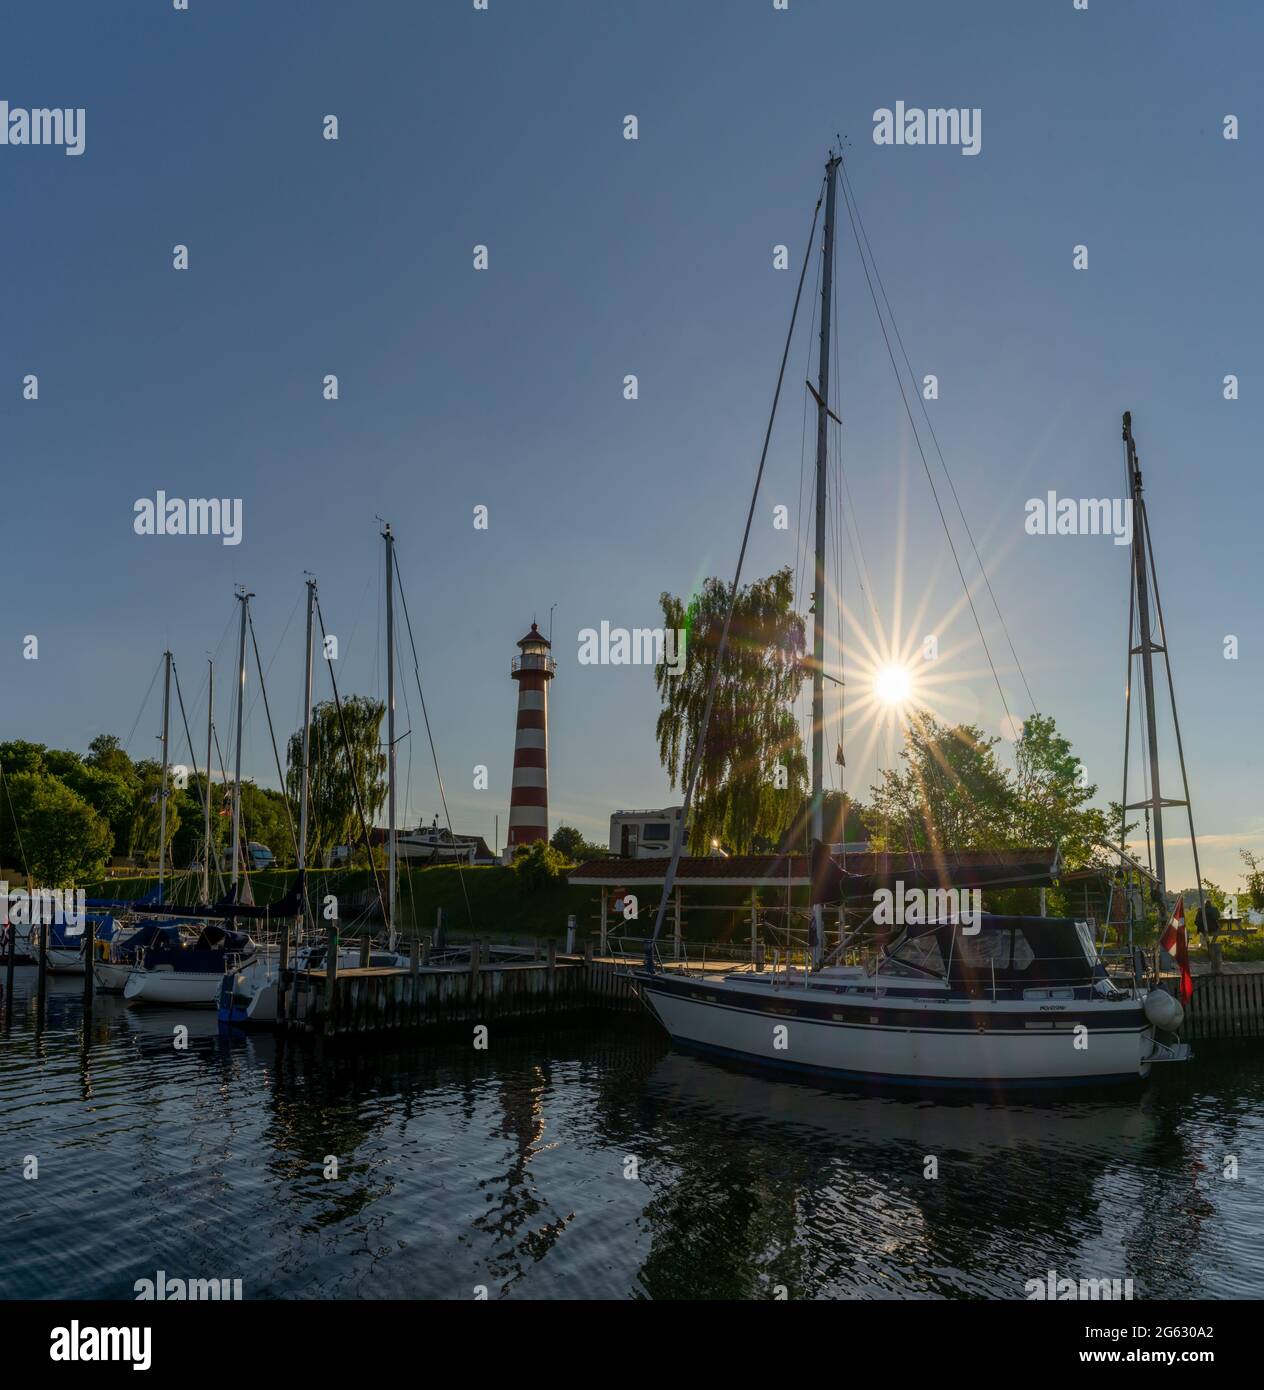 Kongsdal Huse, Danimarca - 7 giugno 2021: barche a vela nel porto di Kongsdal Huve sul fiordo di Mariager con un faro e una stella solare alle spalle Foto Stock